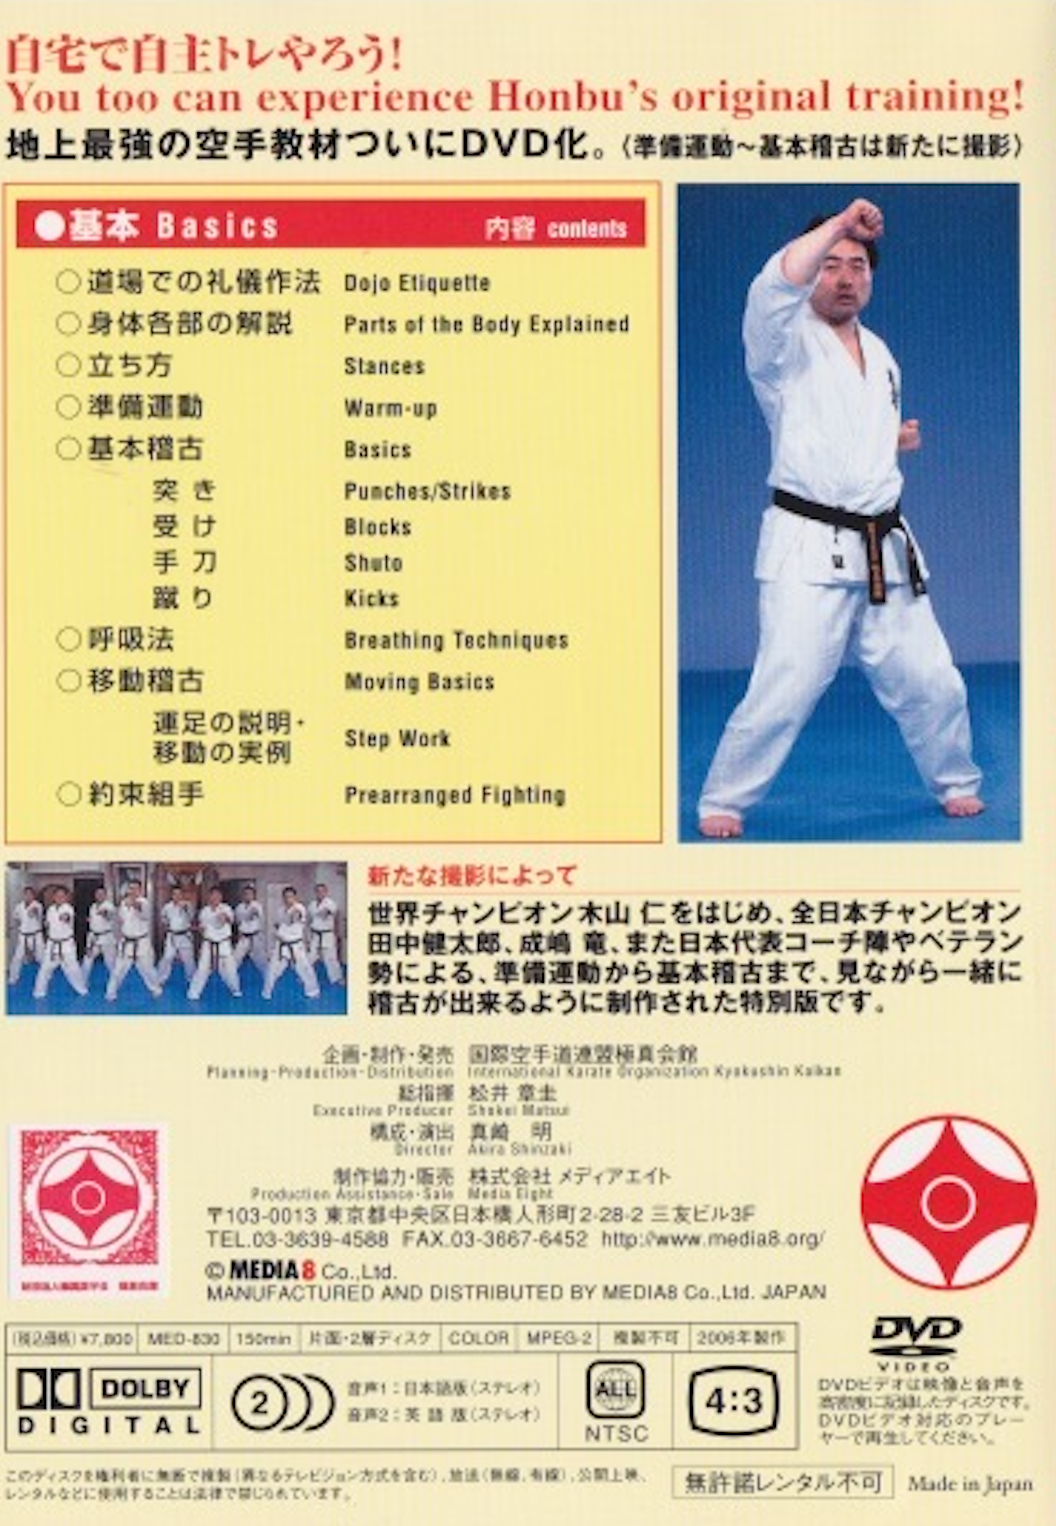 Enciclopedia de Karate Kyokushin Vol 1 y 2: DVD básicos.